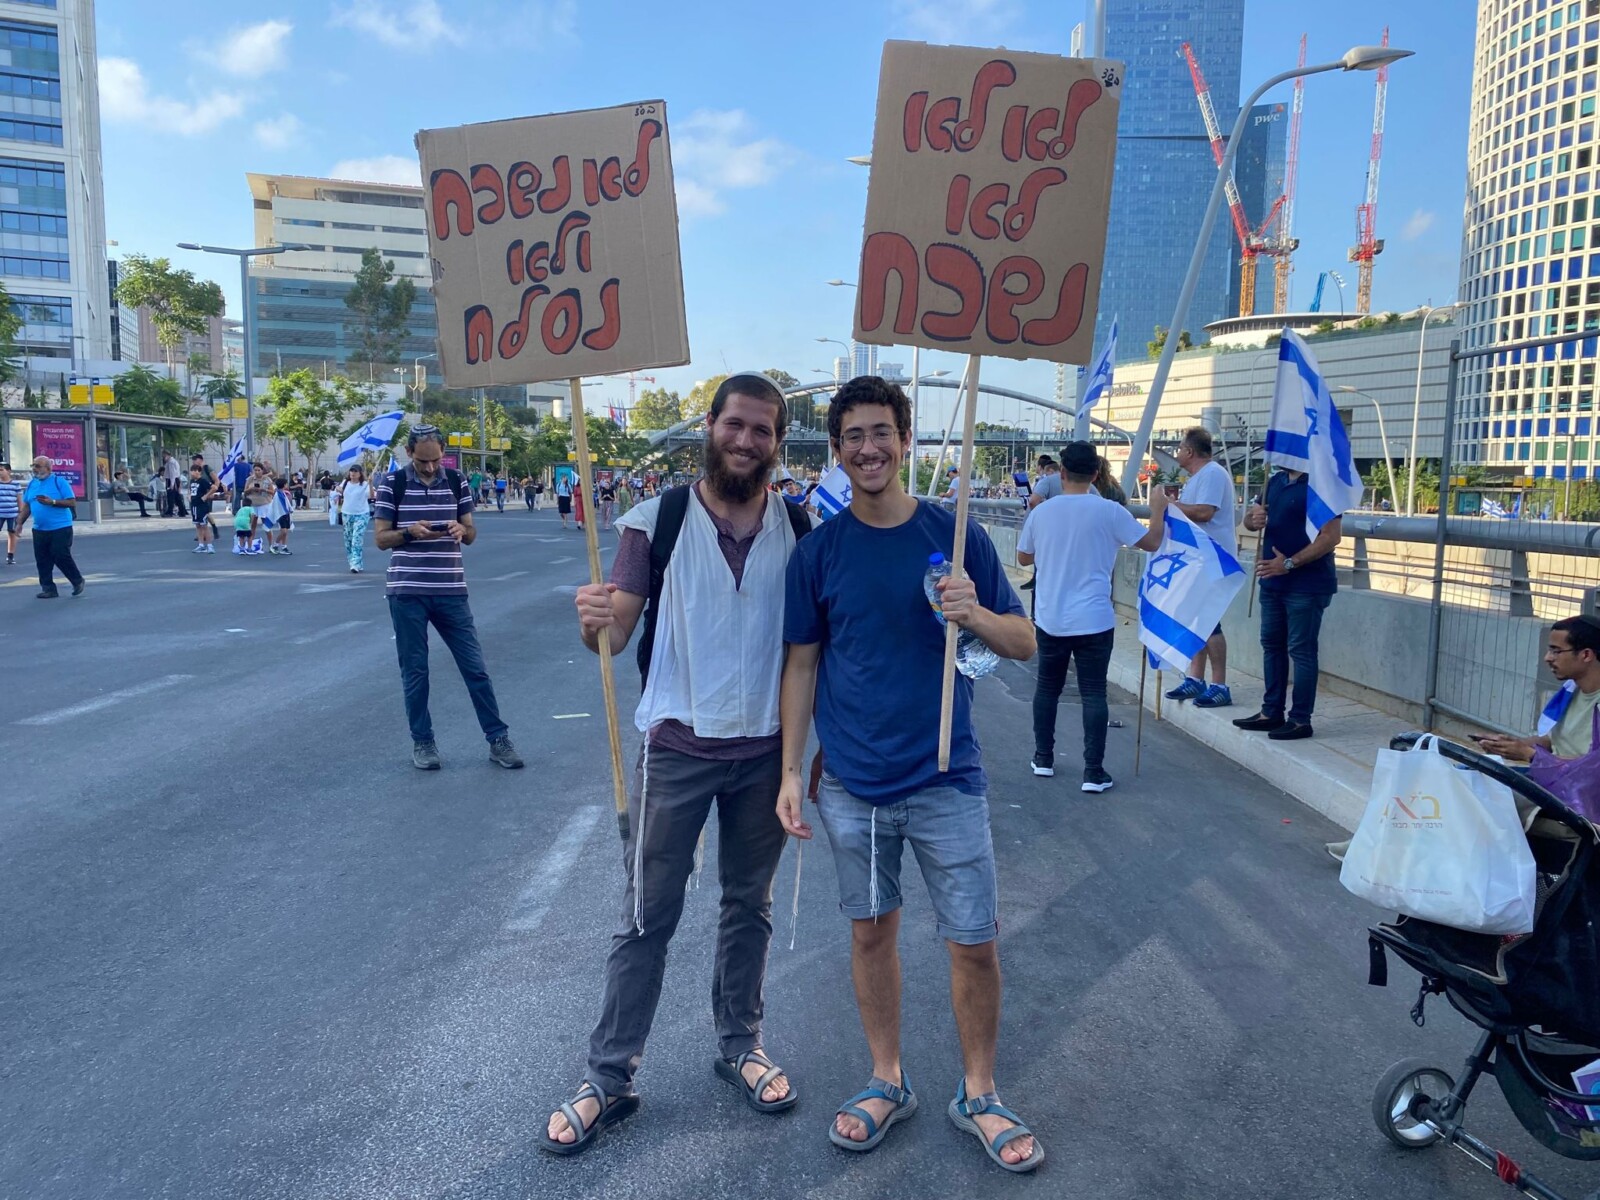 מפגינים בעד הרפורמה בתל אביב. משמאל משה: "אפשר לדבר" (צילום: יהל פרג')